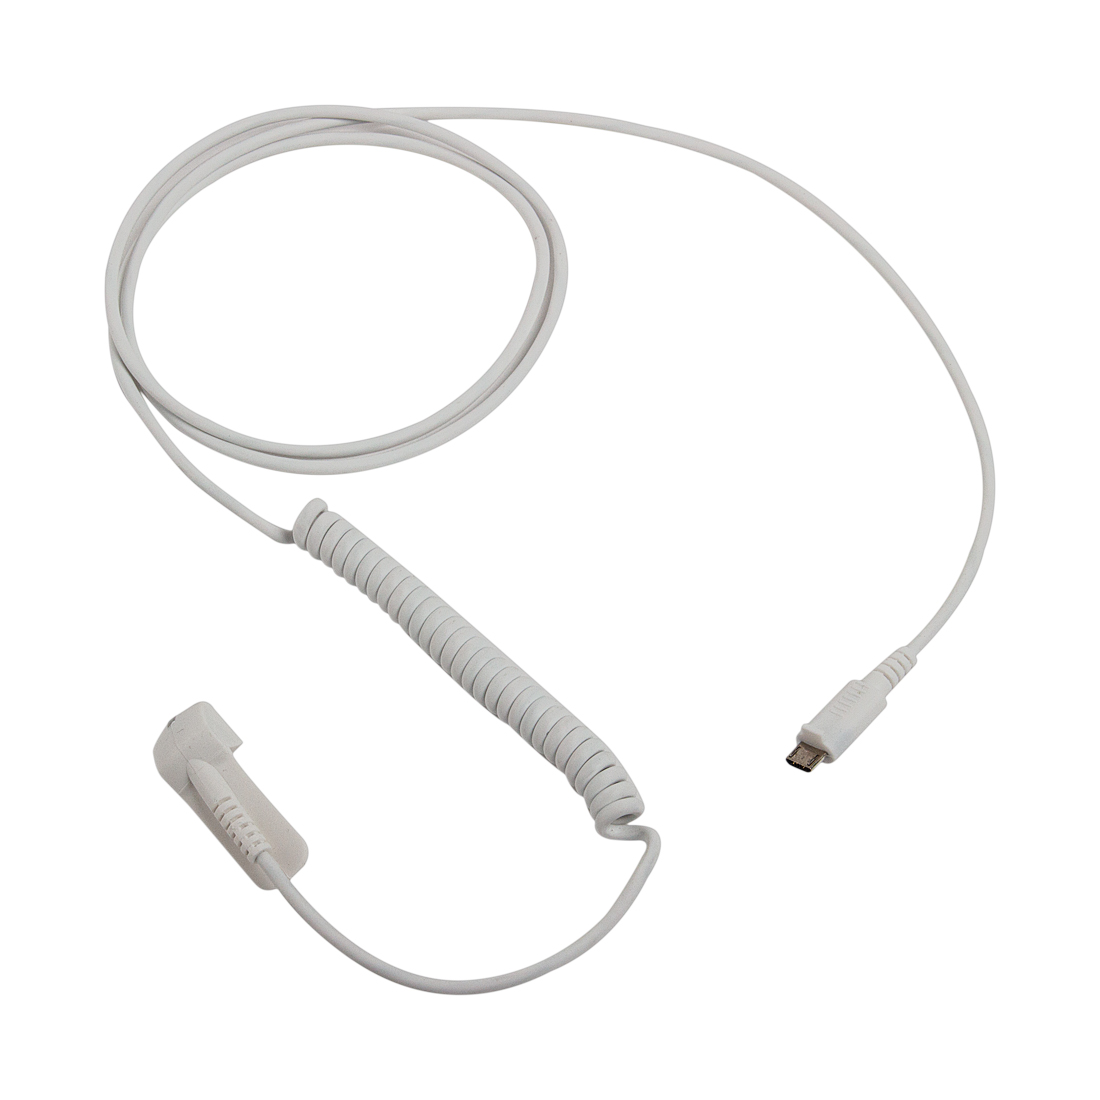 Противокражный кабель Eagle A6150DW (Lightning - Micro USB)